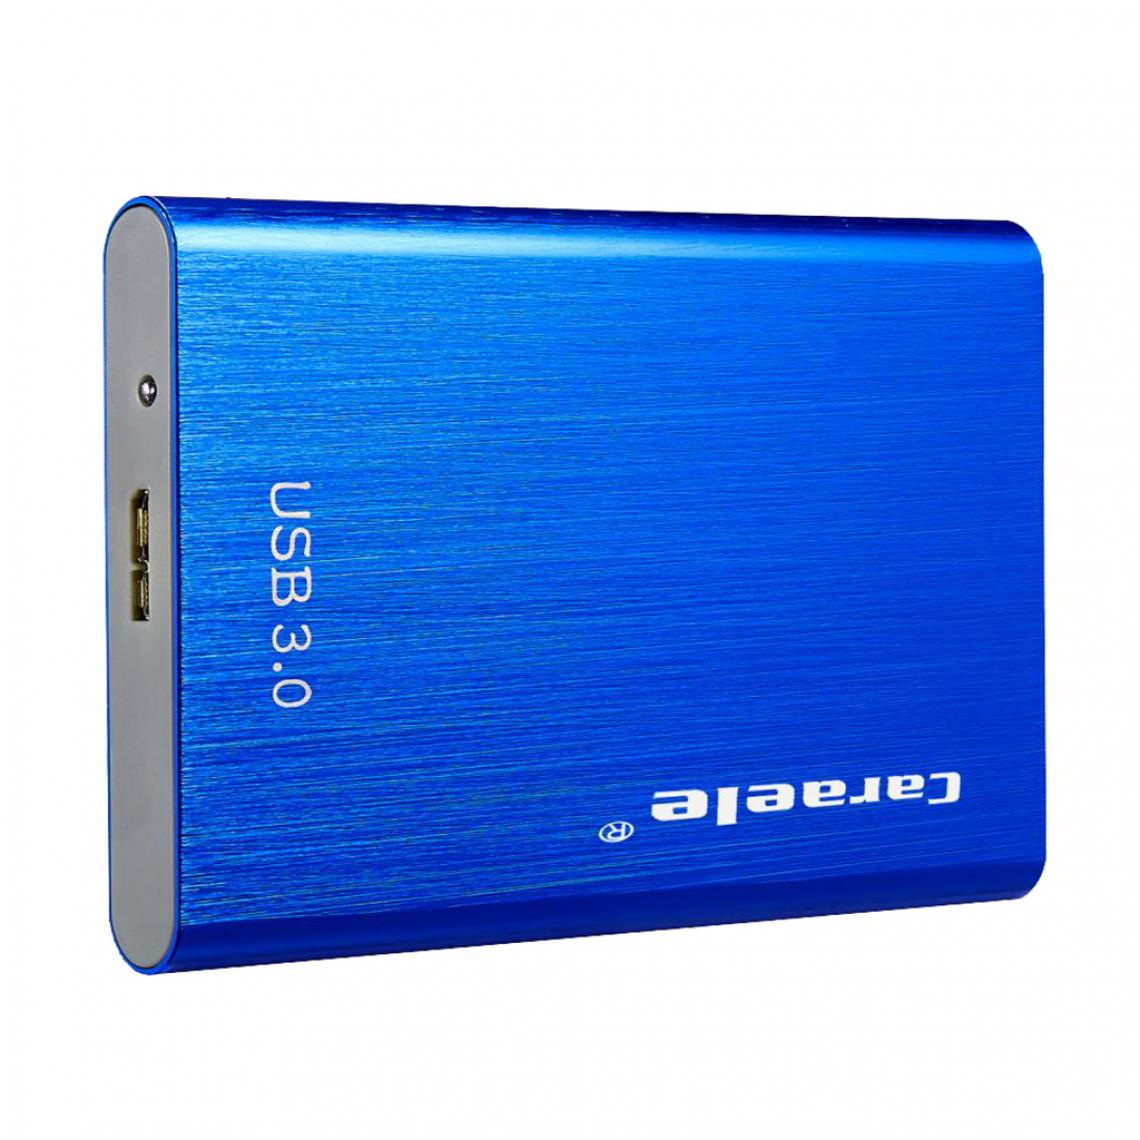 marque generique - Disque dur externe Disque dur Lecteur portable bleu 500 Go - Boitier PC